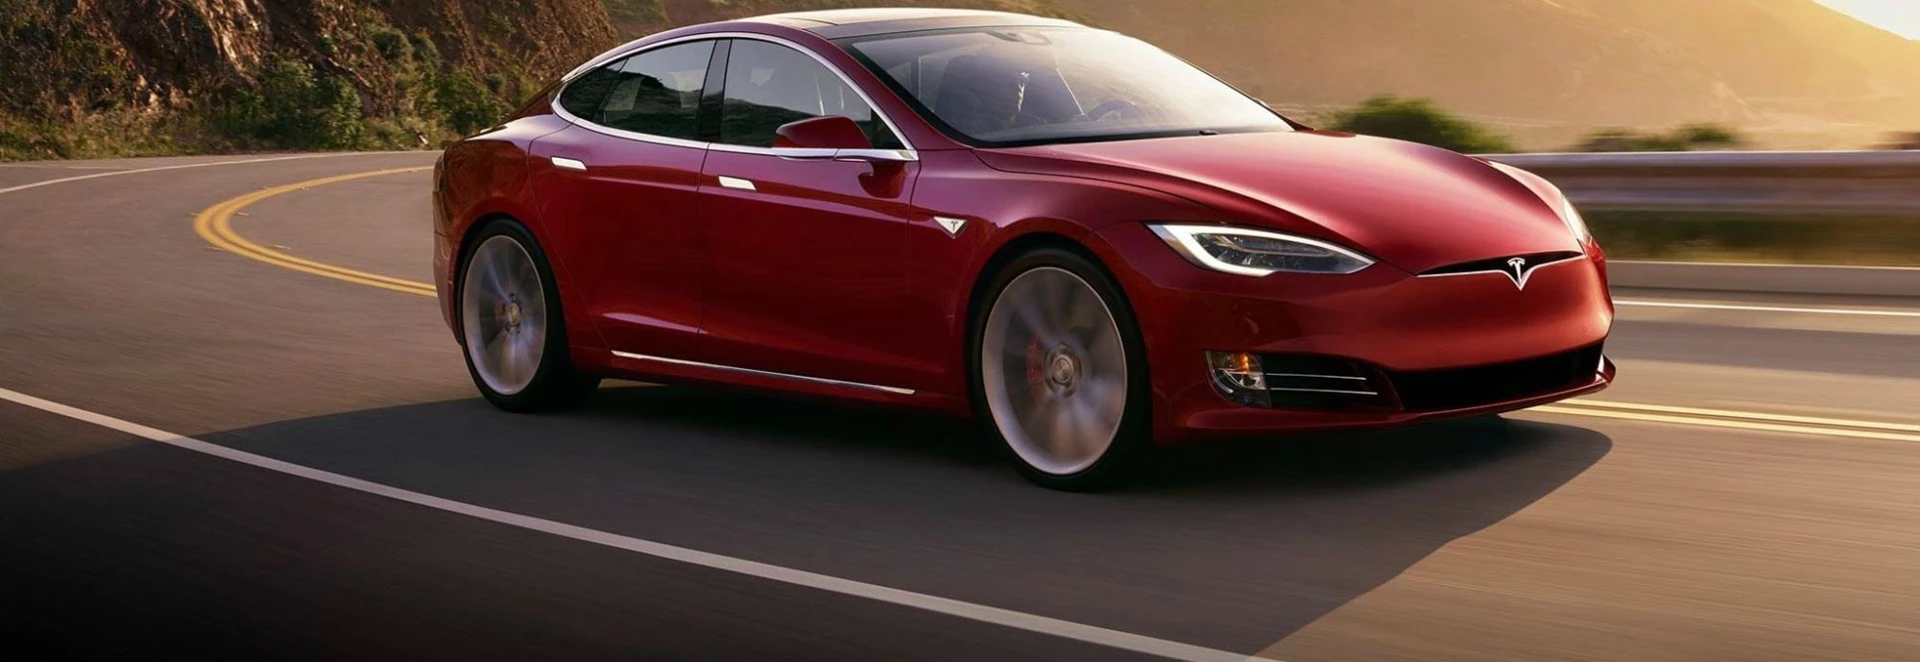 Investigation Reveals Tesla Driver Ignored Several Warnings before Fatal Crash in Florida 